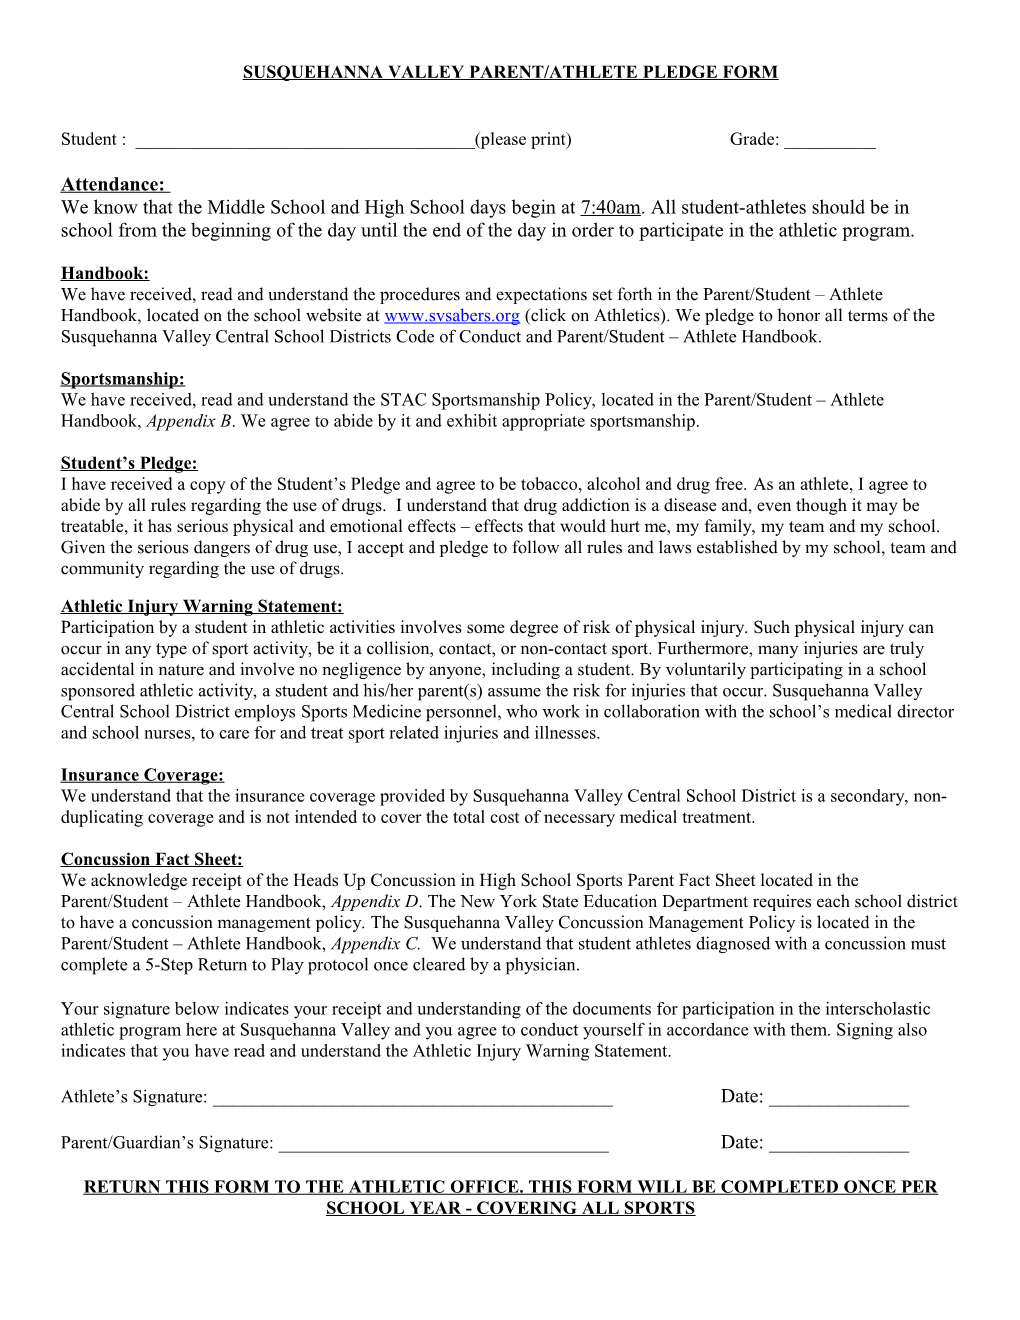 Susquehanna Valley Parent/Athlete Pledge Form